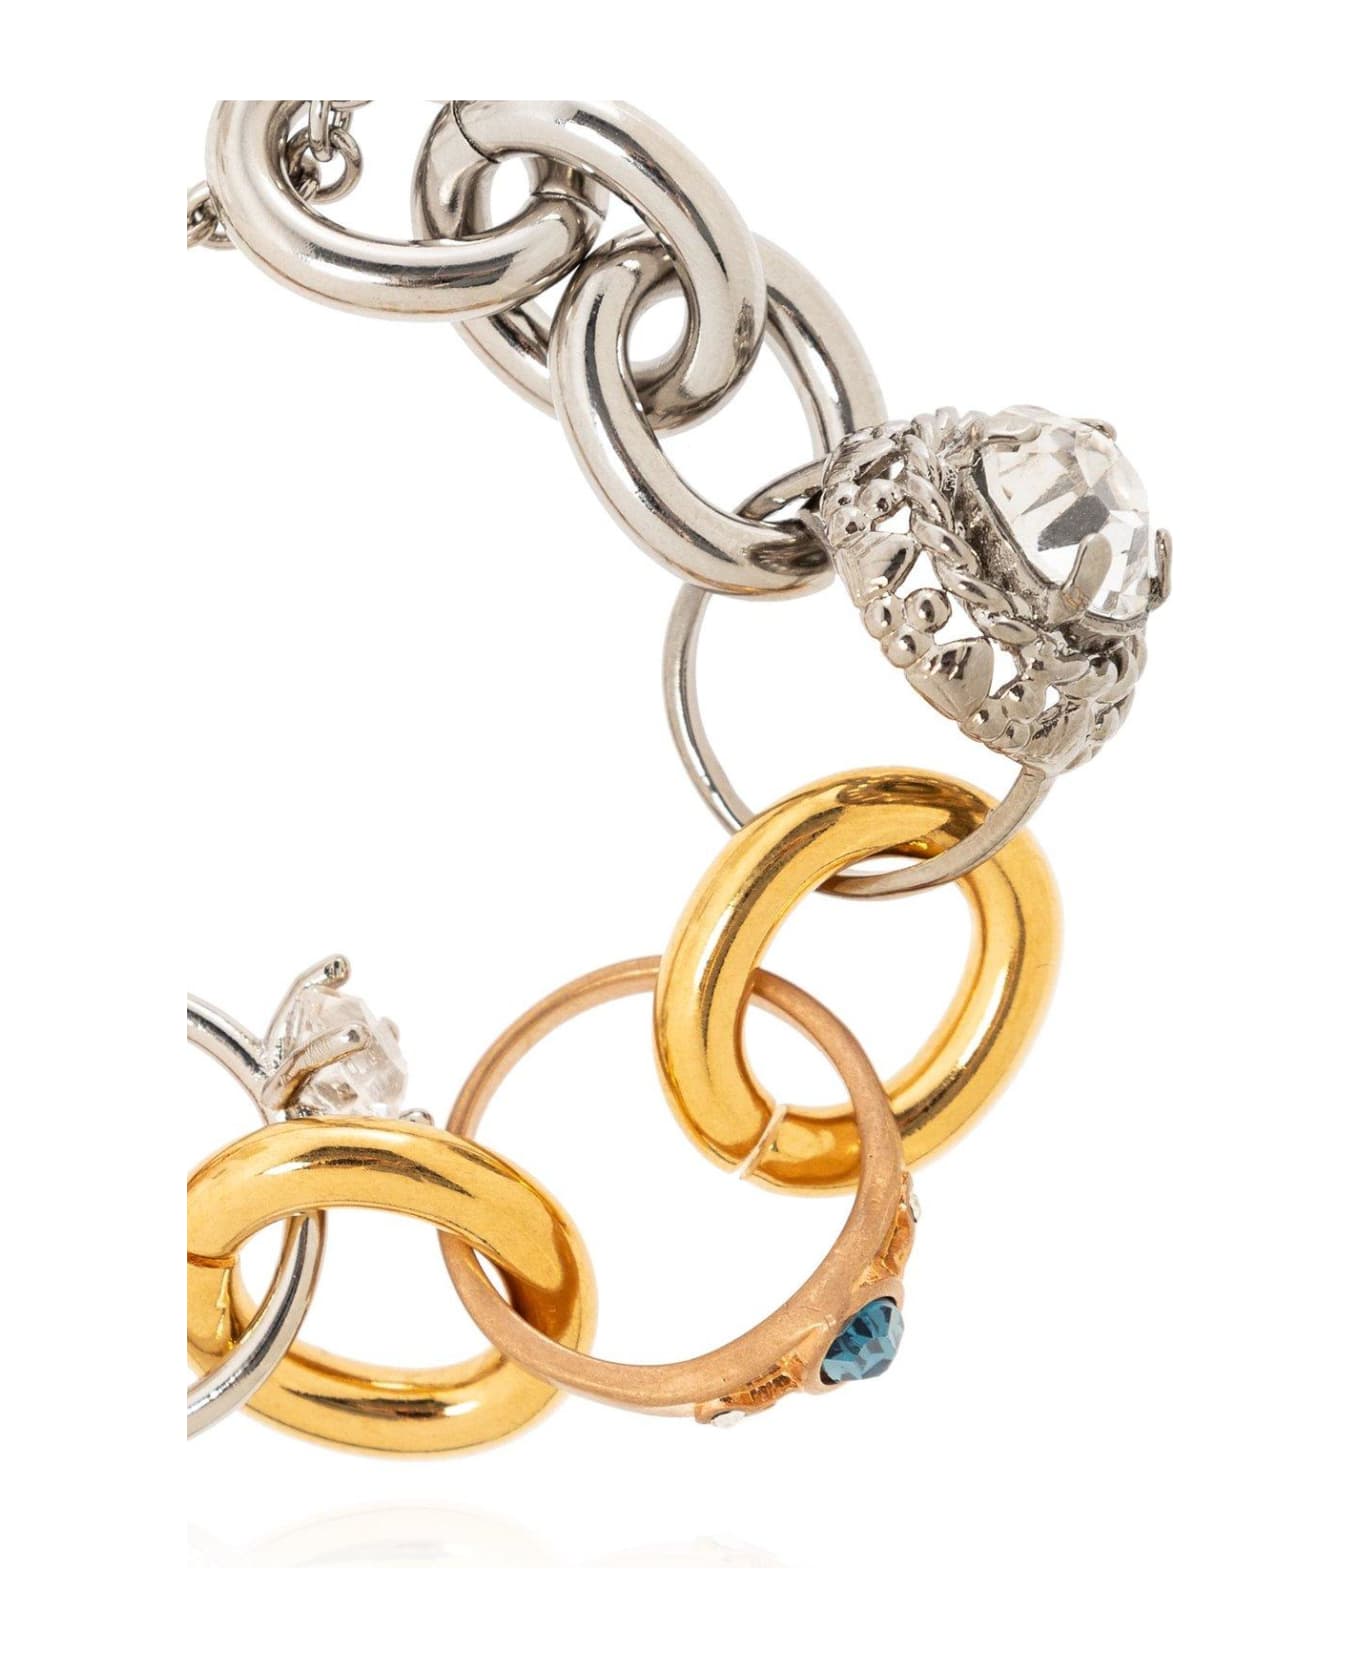 Marni Two-toned Ring Charm Bracelet - Golden